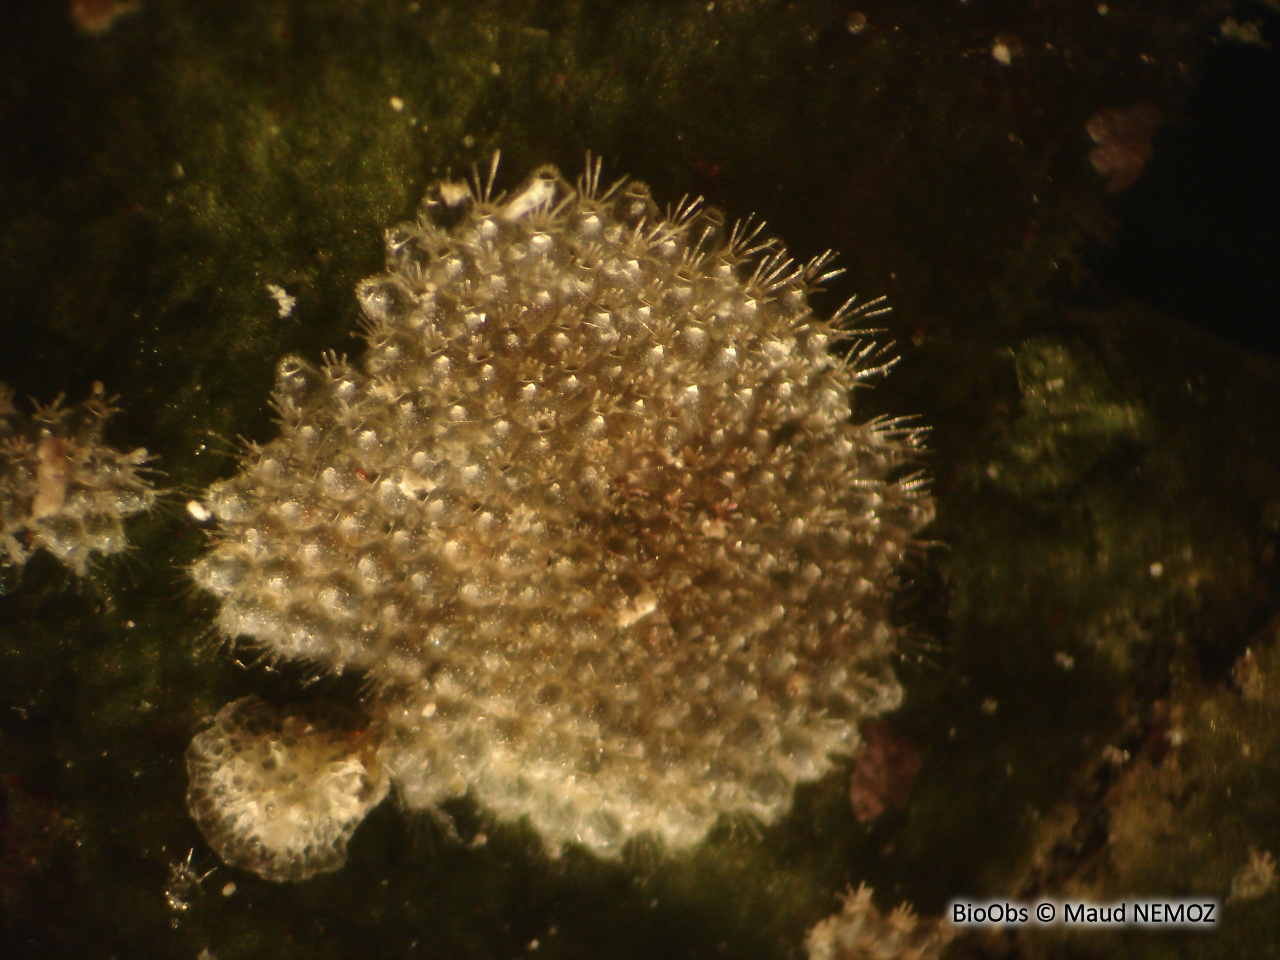 Microporelle ciliée blanche - Microporella ciliata - Maud NEMOZ - BioObs